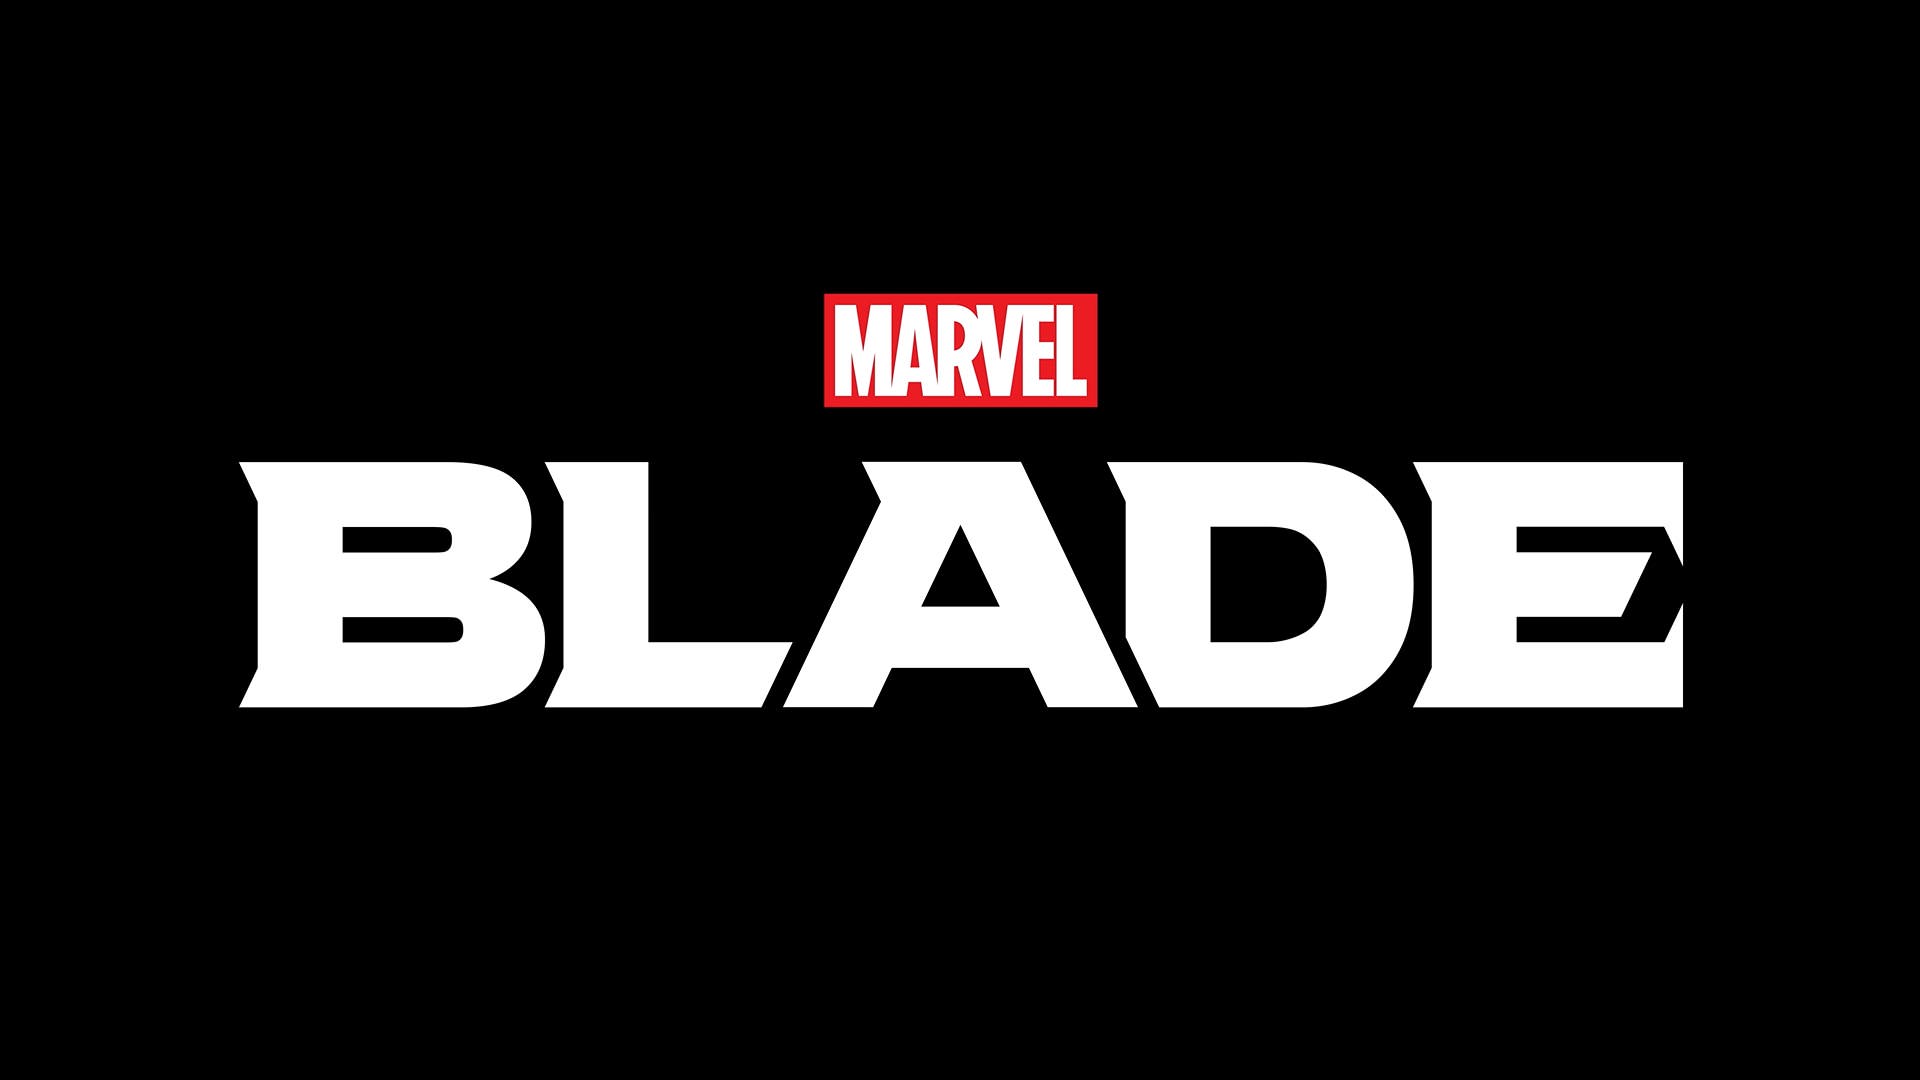 لوگو بازی Marvel’s Blade استودیو آرکین